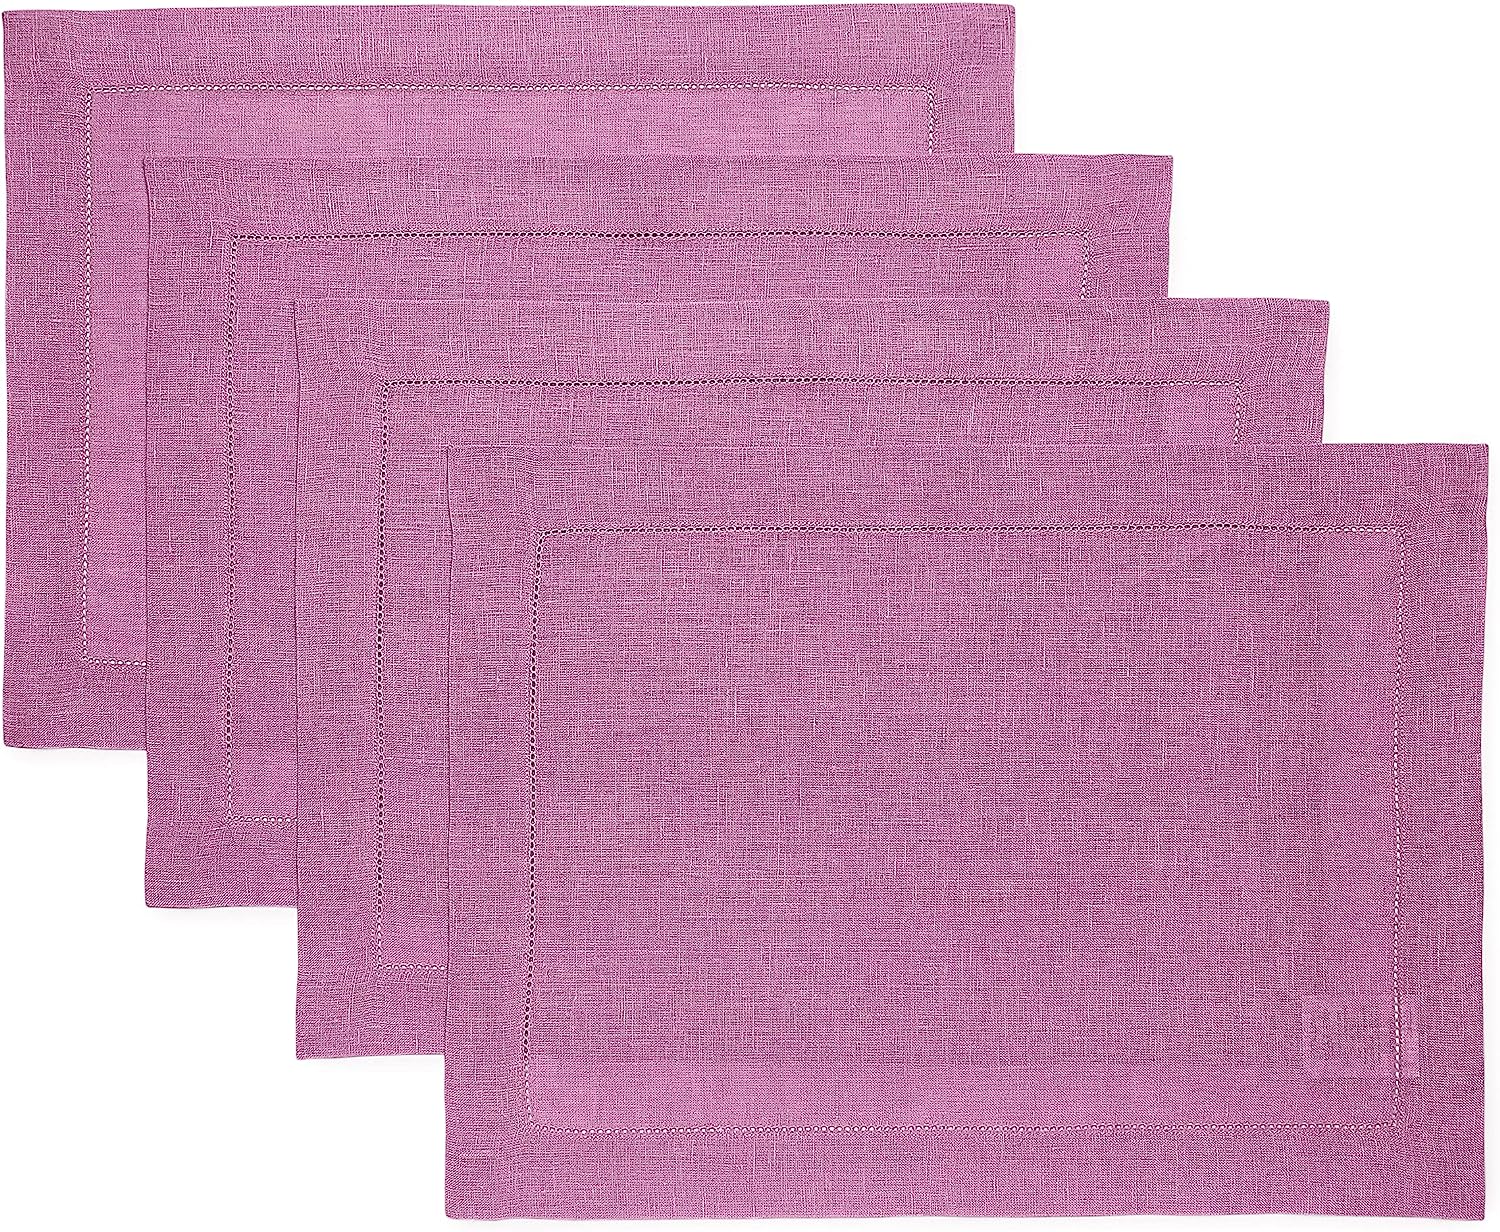 Hemstitched Table Linens (Violet Color)